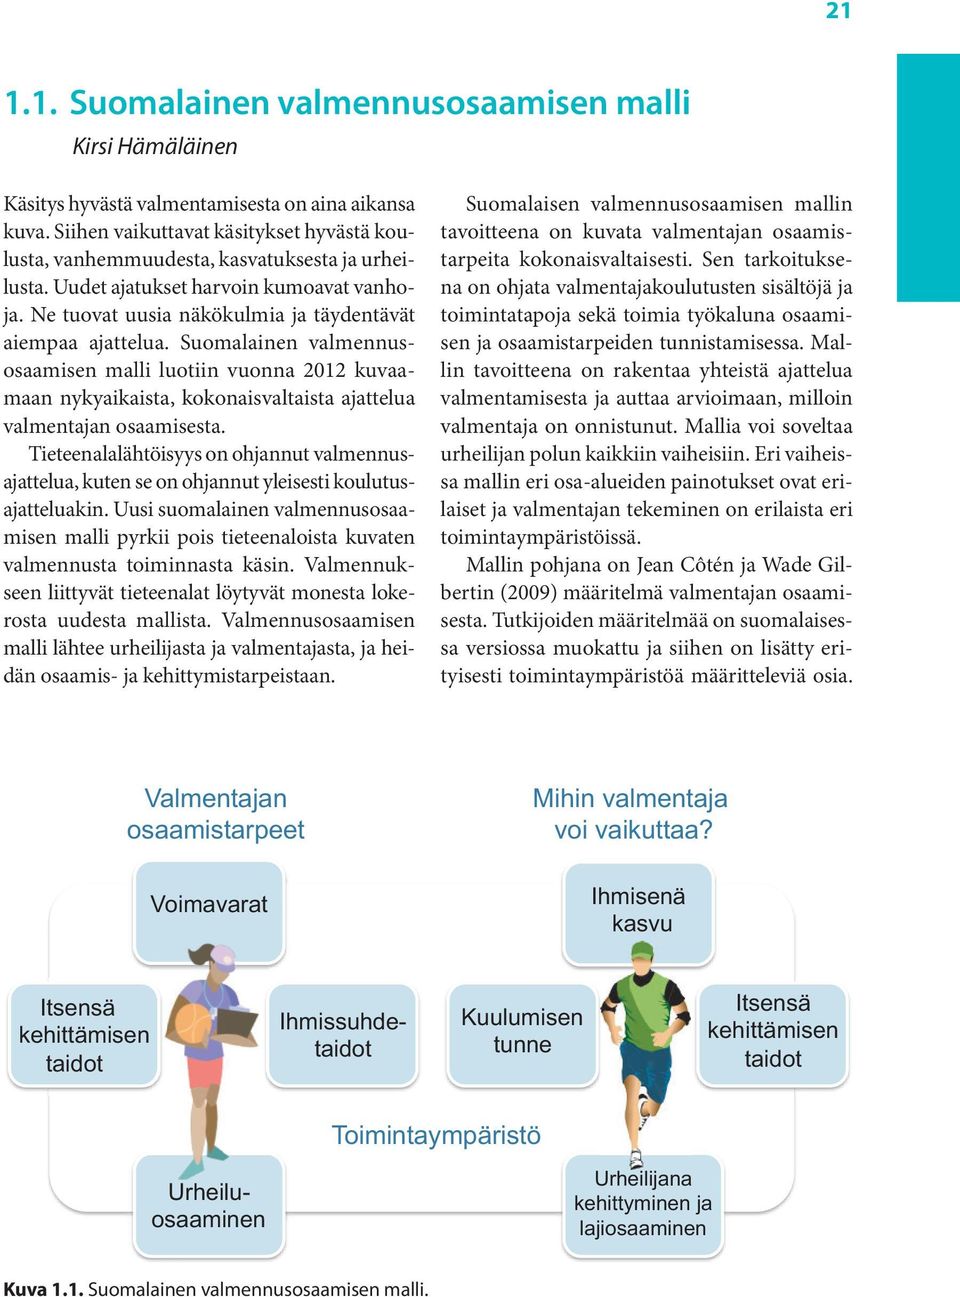 Suomalainen valmennusosaamisen malli luotiin vuonna 2012 kuvaamaan nykyaikaista, kokonaisvaltaista ajattelua valmentajan osaamisesta.